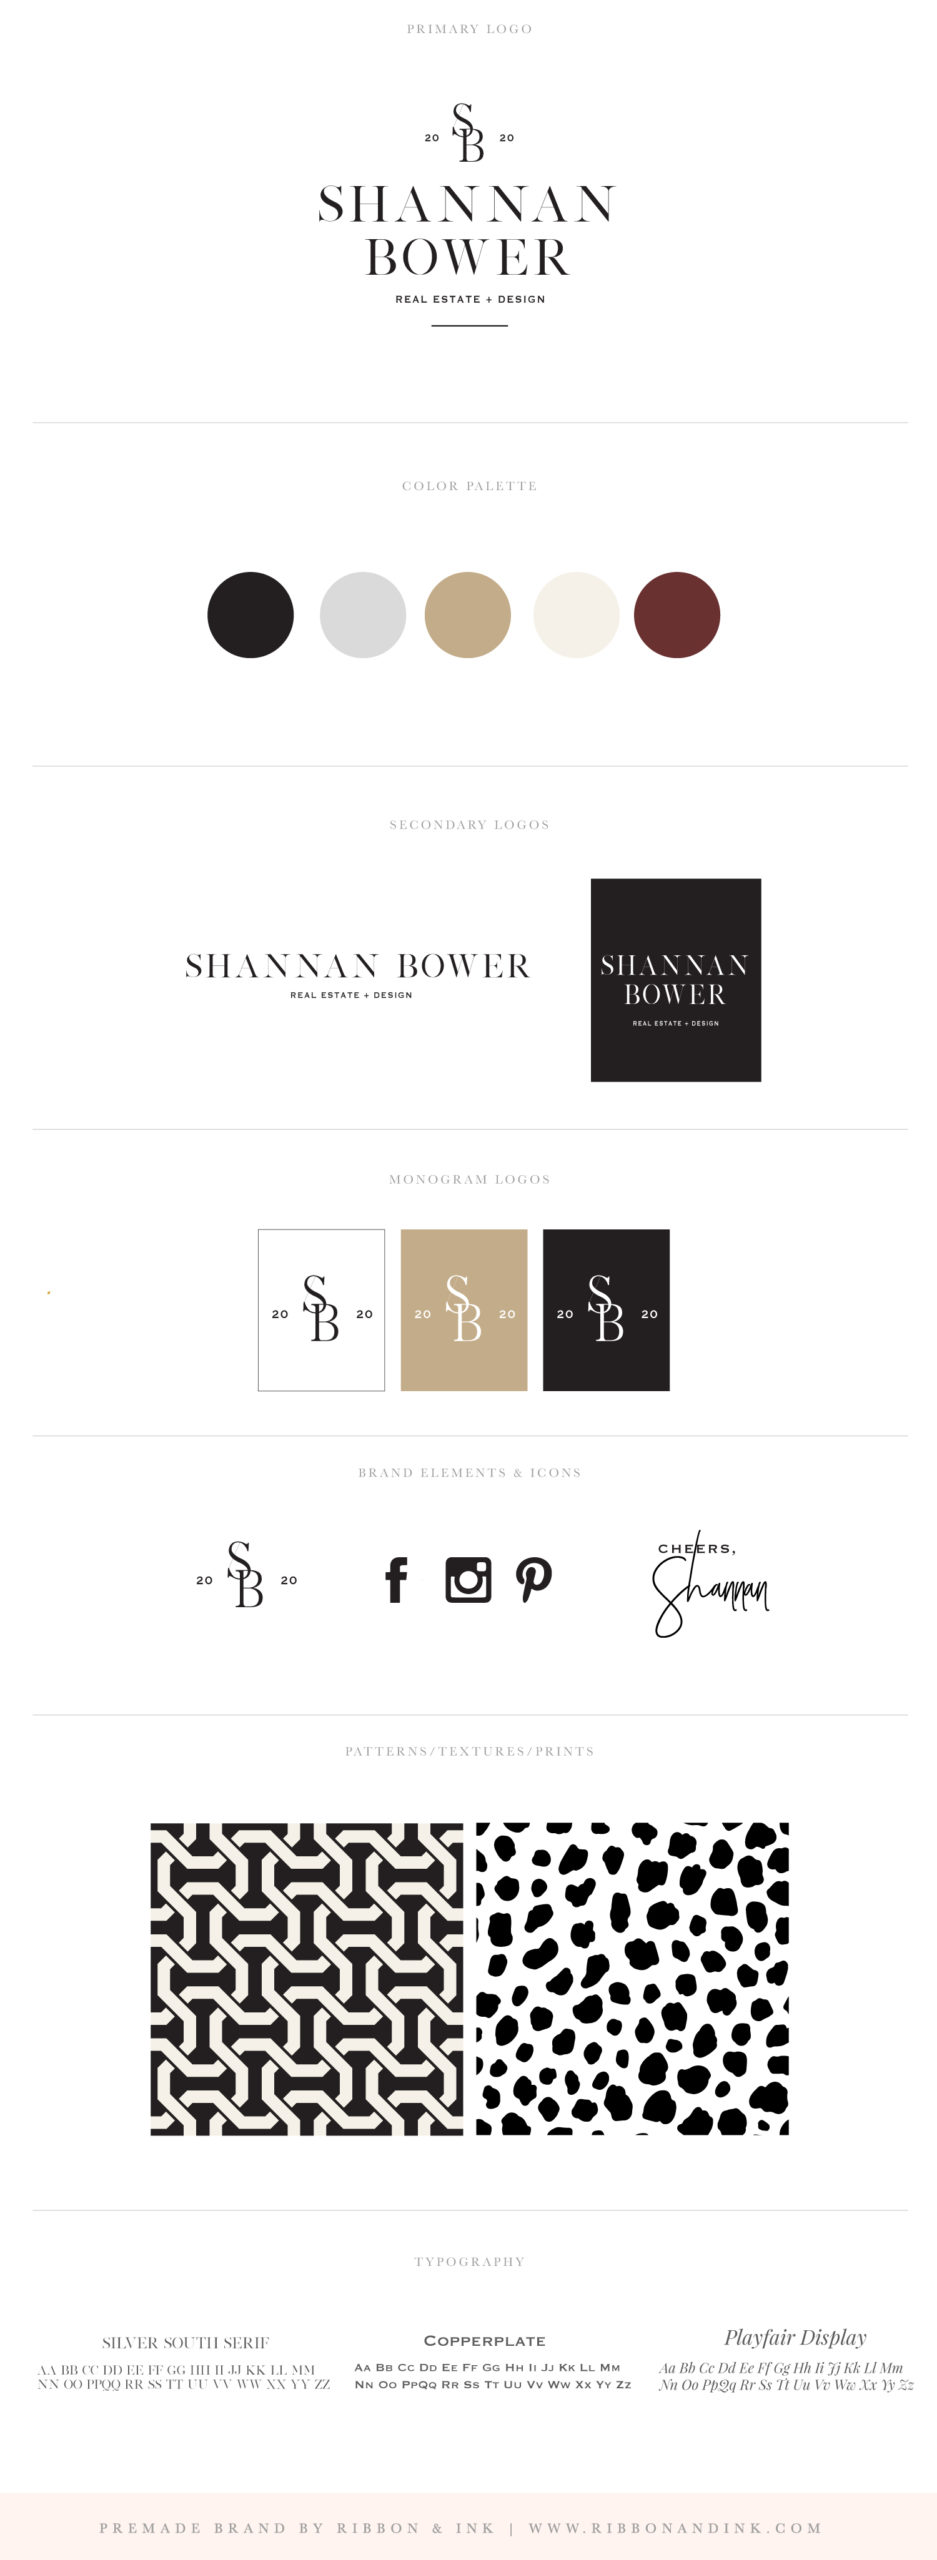 branding for realtors / real estate brand / logo designer for realtors / texas realtor brand identity / shannan bower / custom